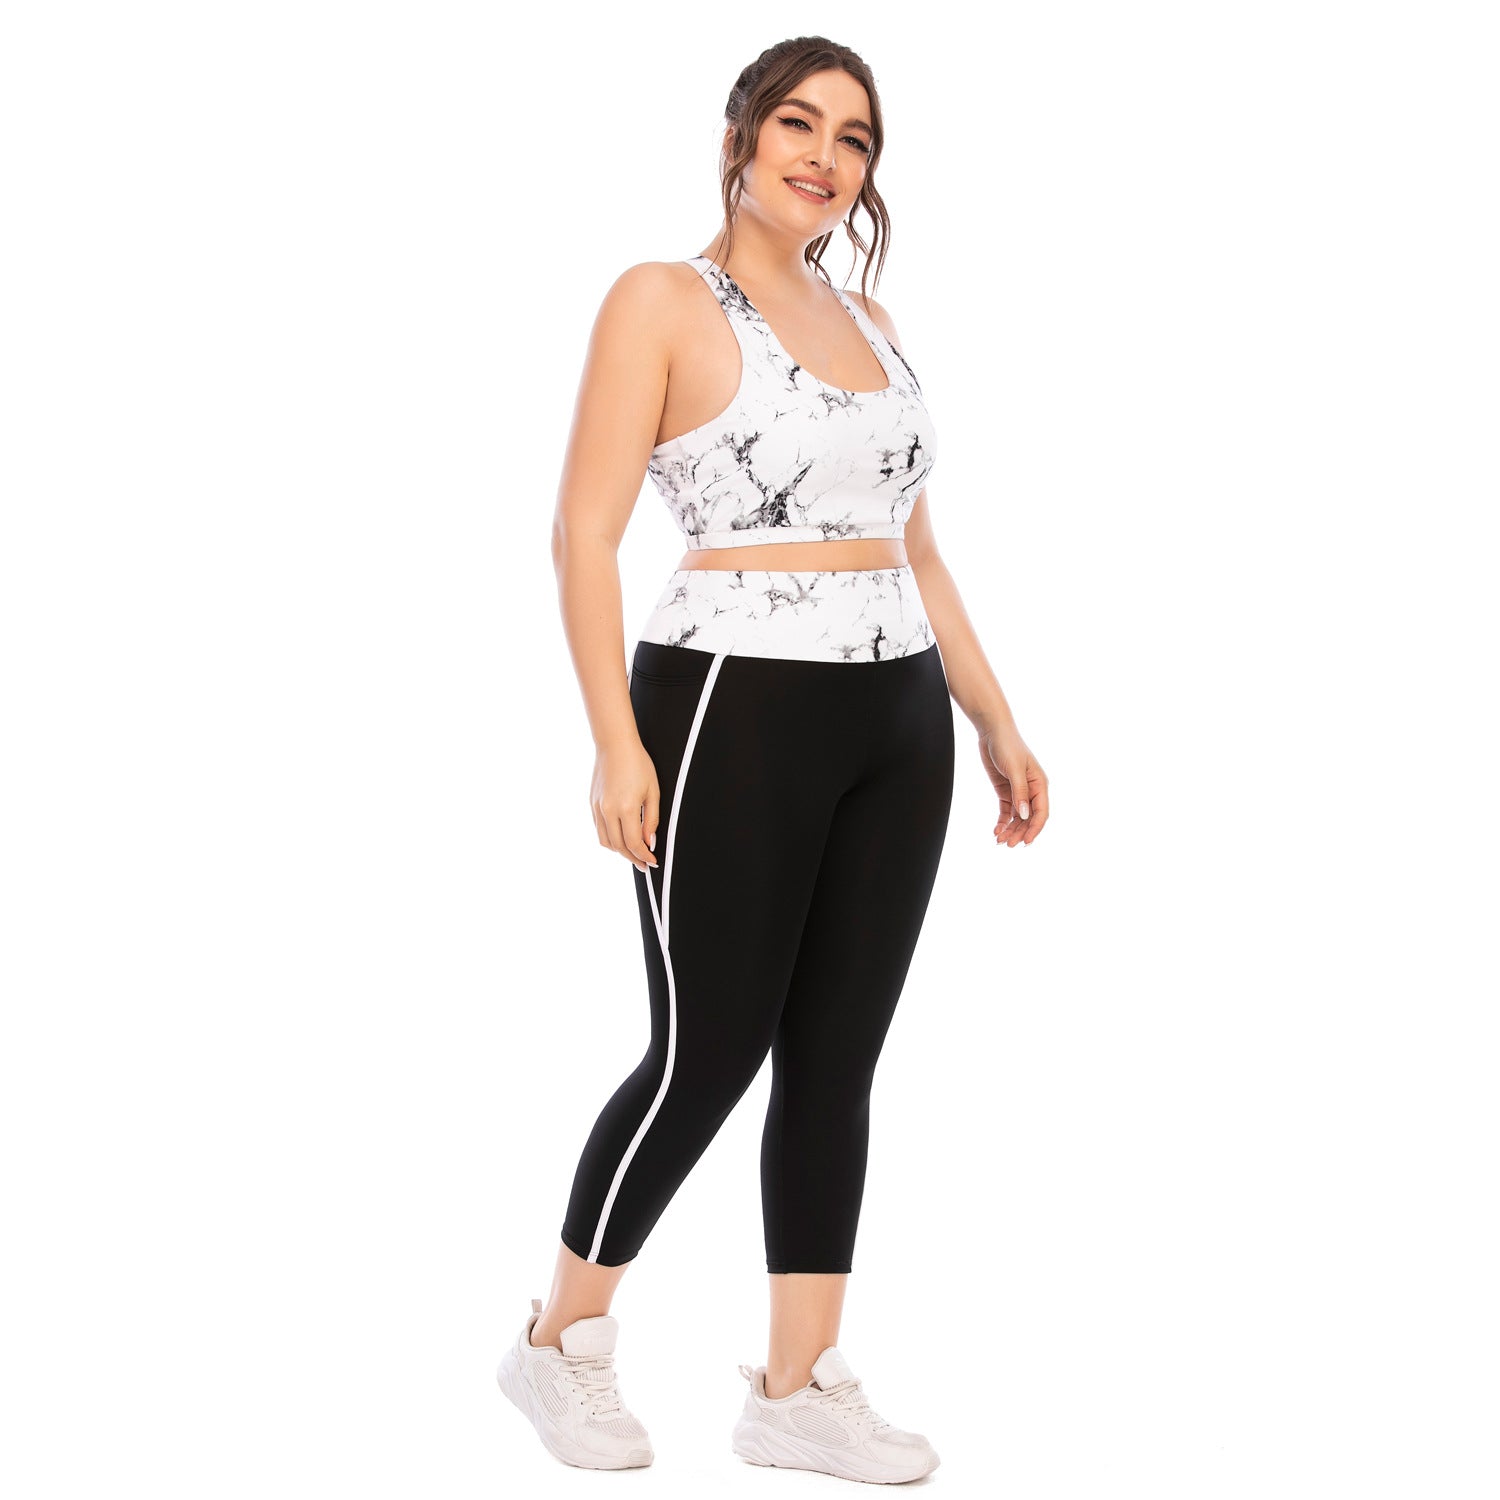 Workout Clothing Suit - Plus Size Yoga Clothing Leggings